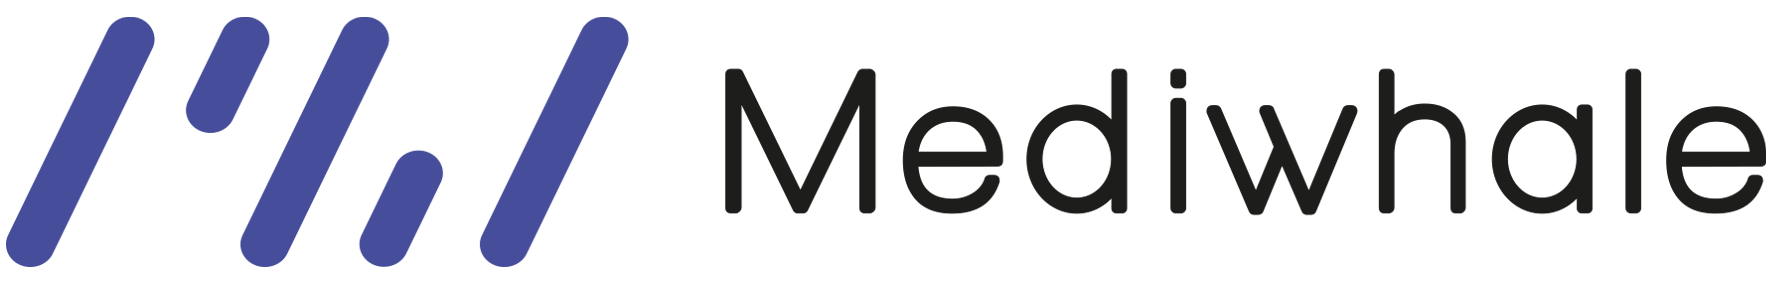 Mediwhale | AI diagnostic solution